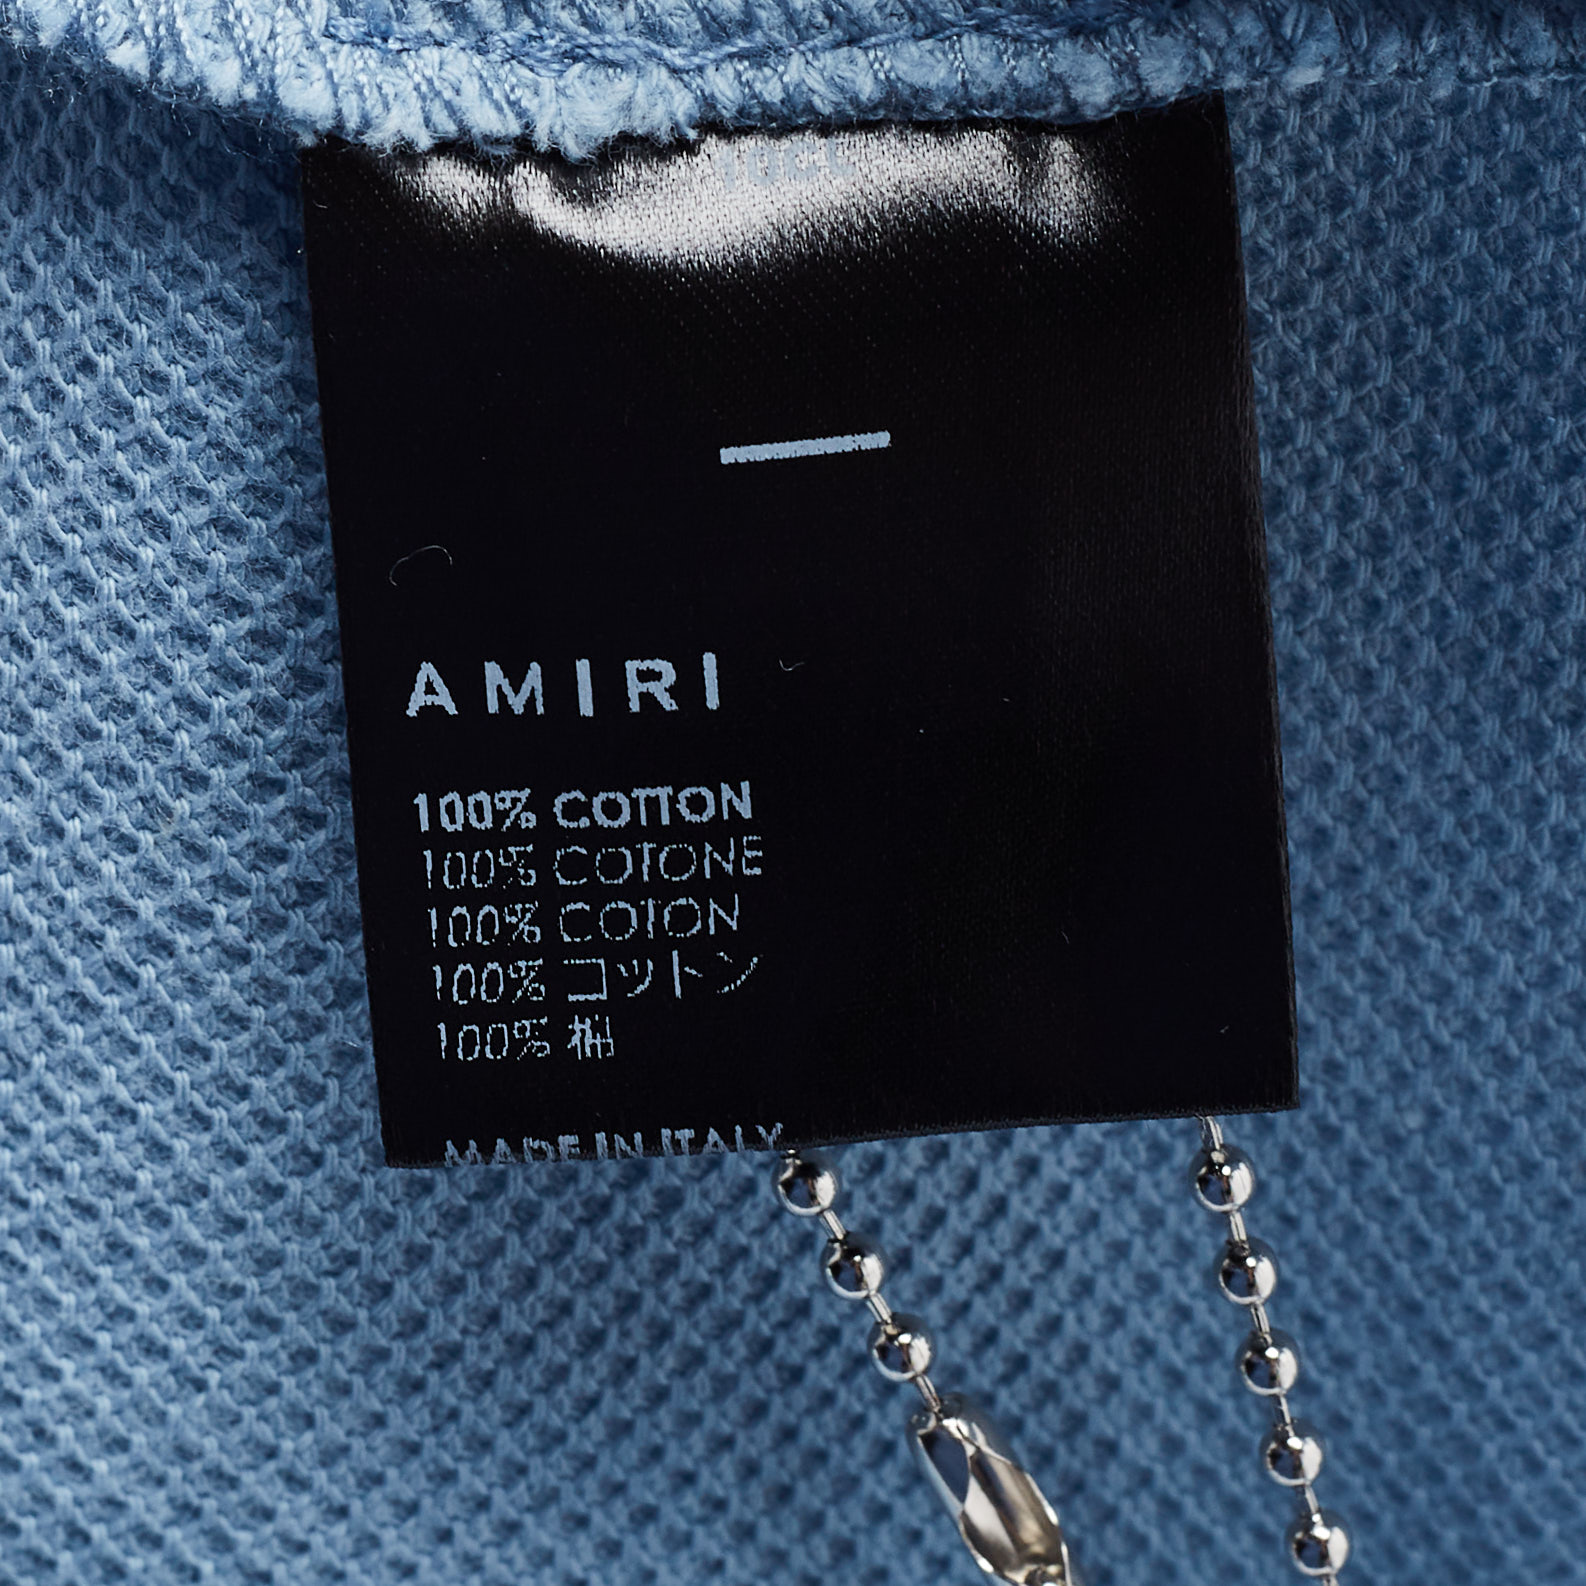 Amiri Blue Cotton Pique Logo Polo T-Shirt M